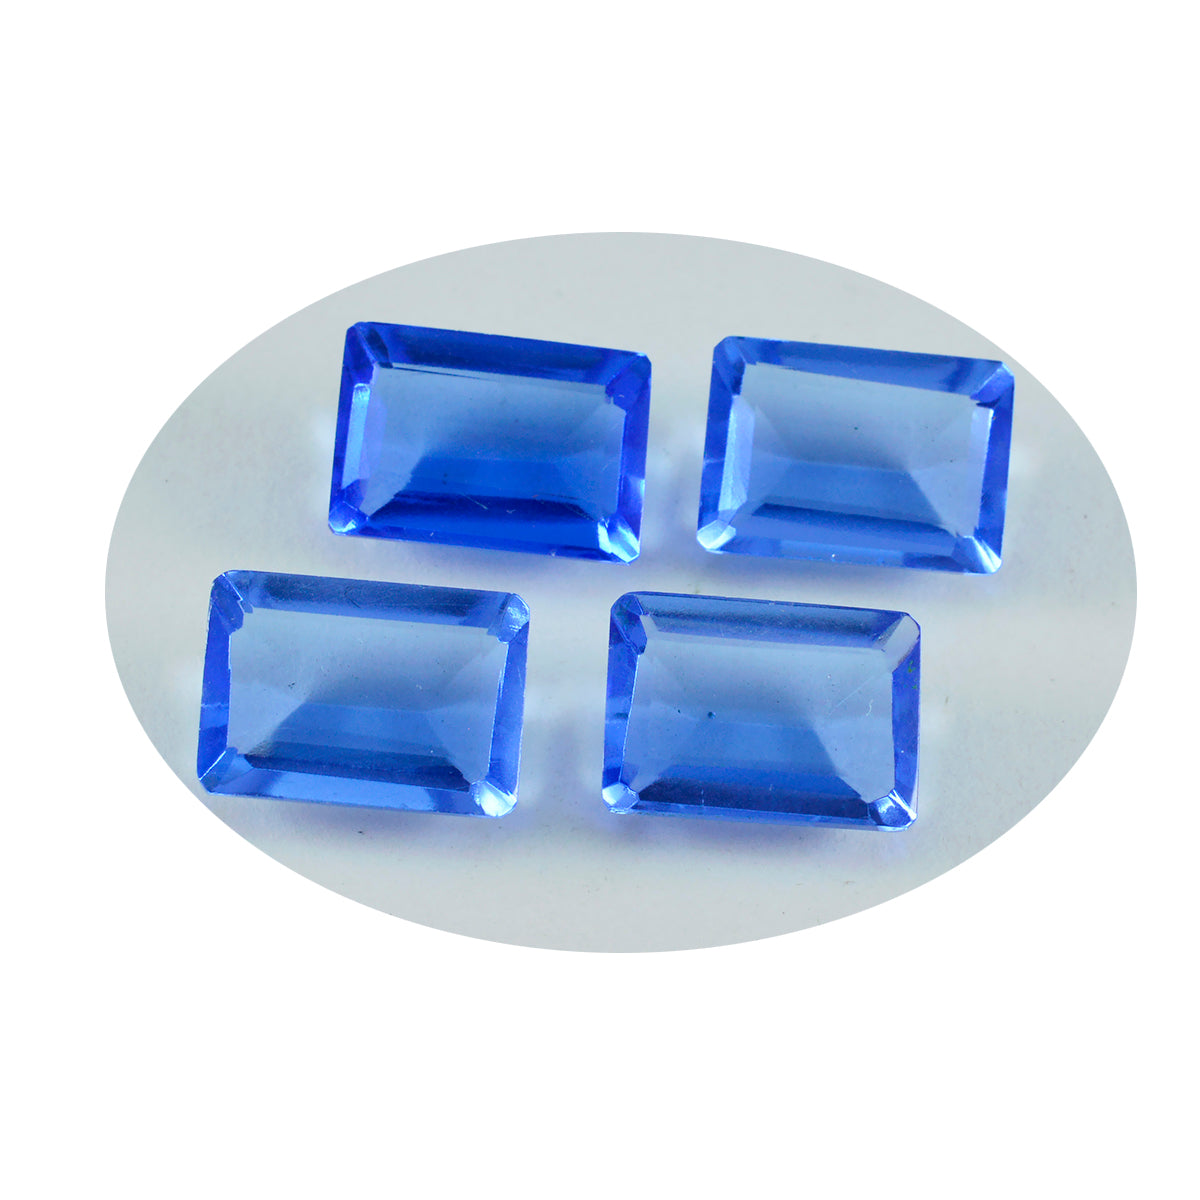 Riyogems 1 Stück blauer Saphir, CZ, facettiert, 10 x 14 mm, Achteckform, hübsche Qualitätsedelsteine